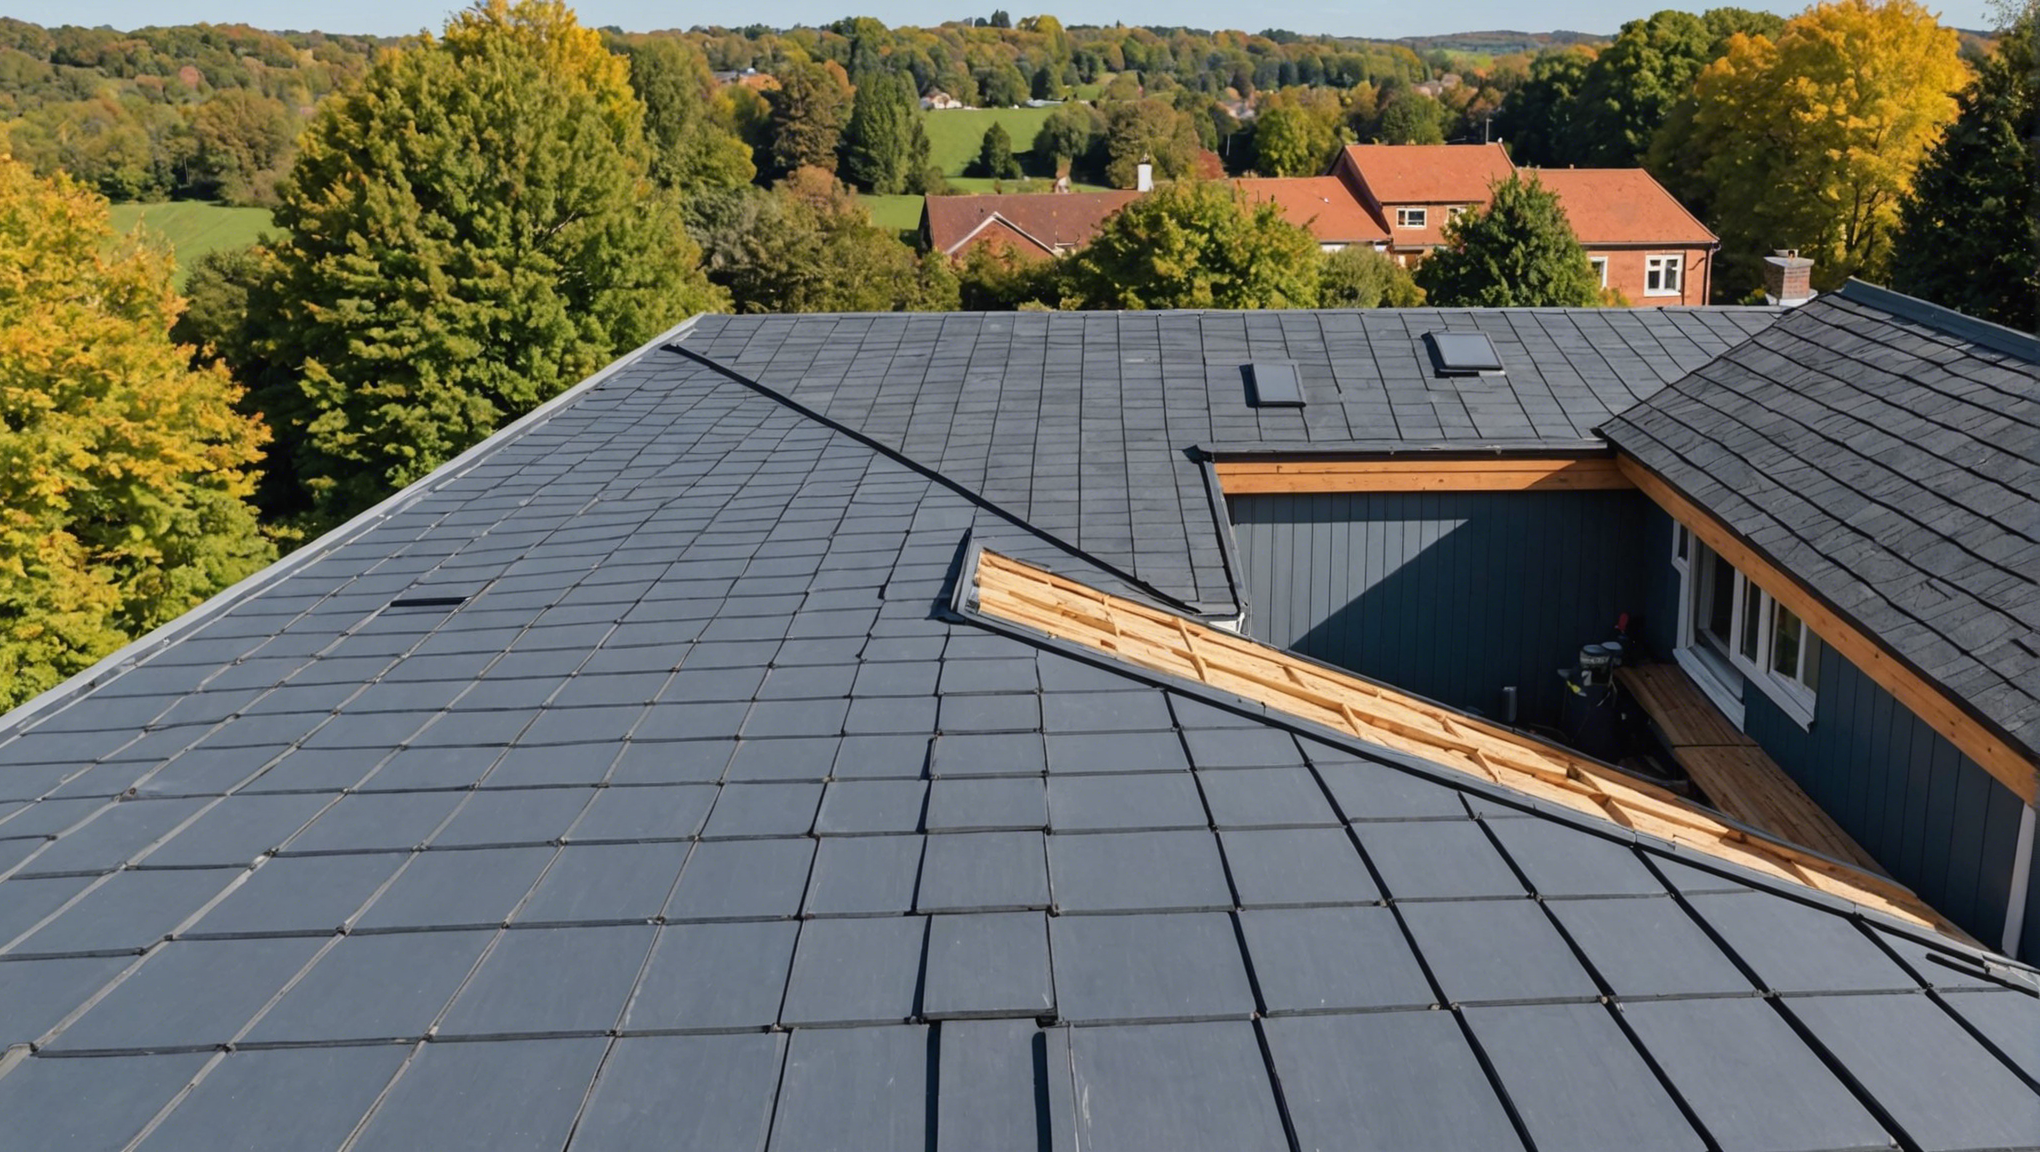 découvrez comment isoler sa toiture par l'extérieur pour améliorer le confort de votre logement et réaliser des économies d'énergie. conseils, techniques et avantages expliqués.